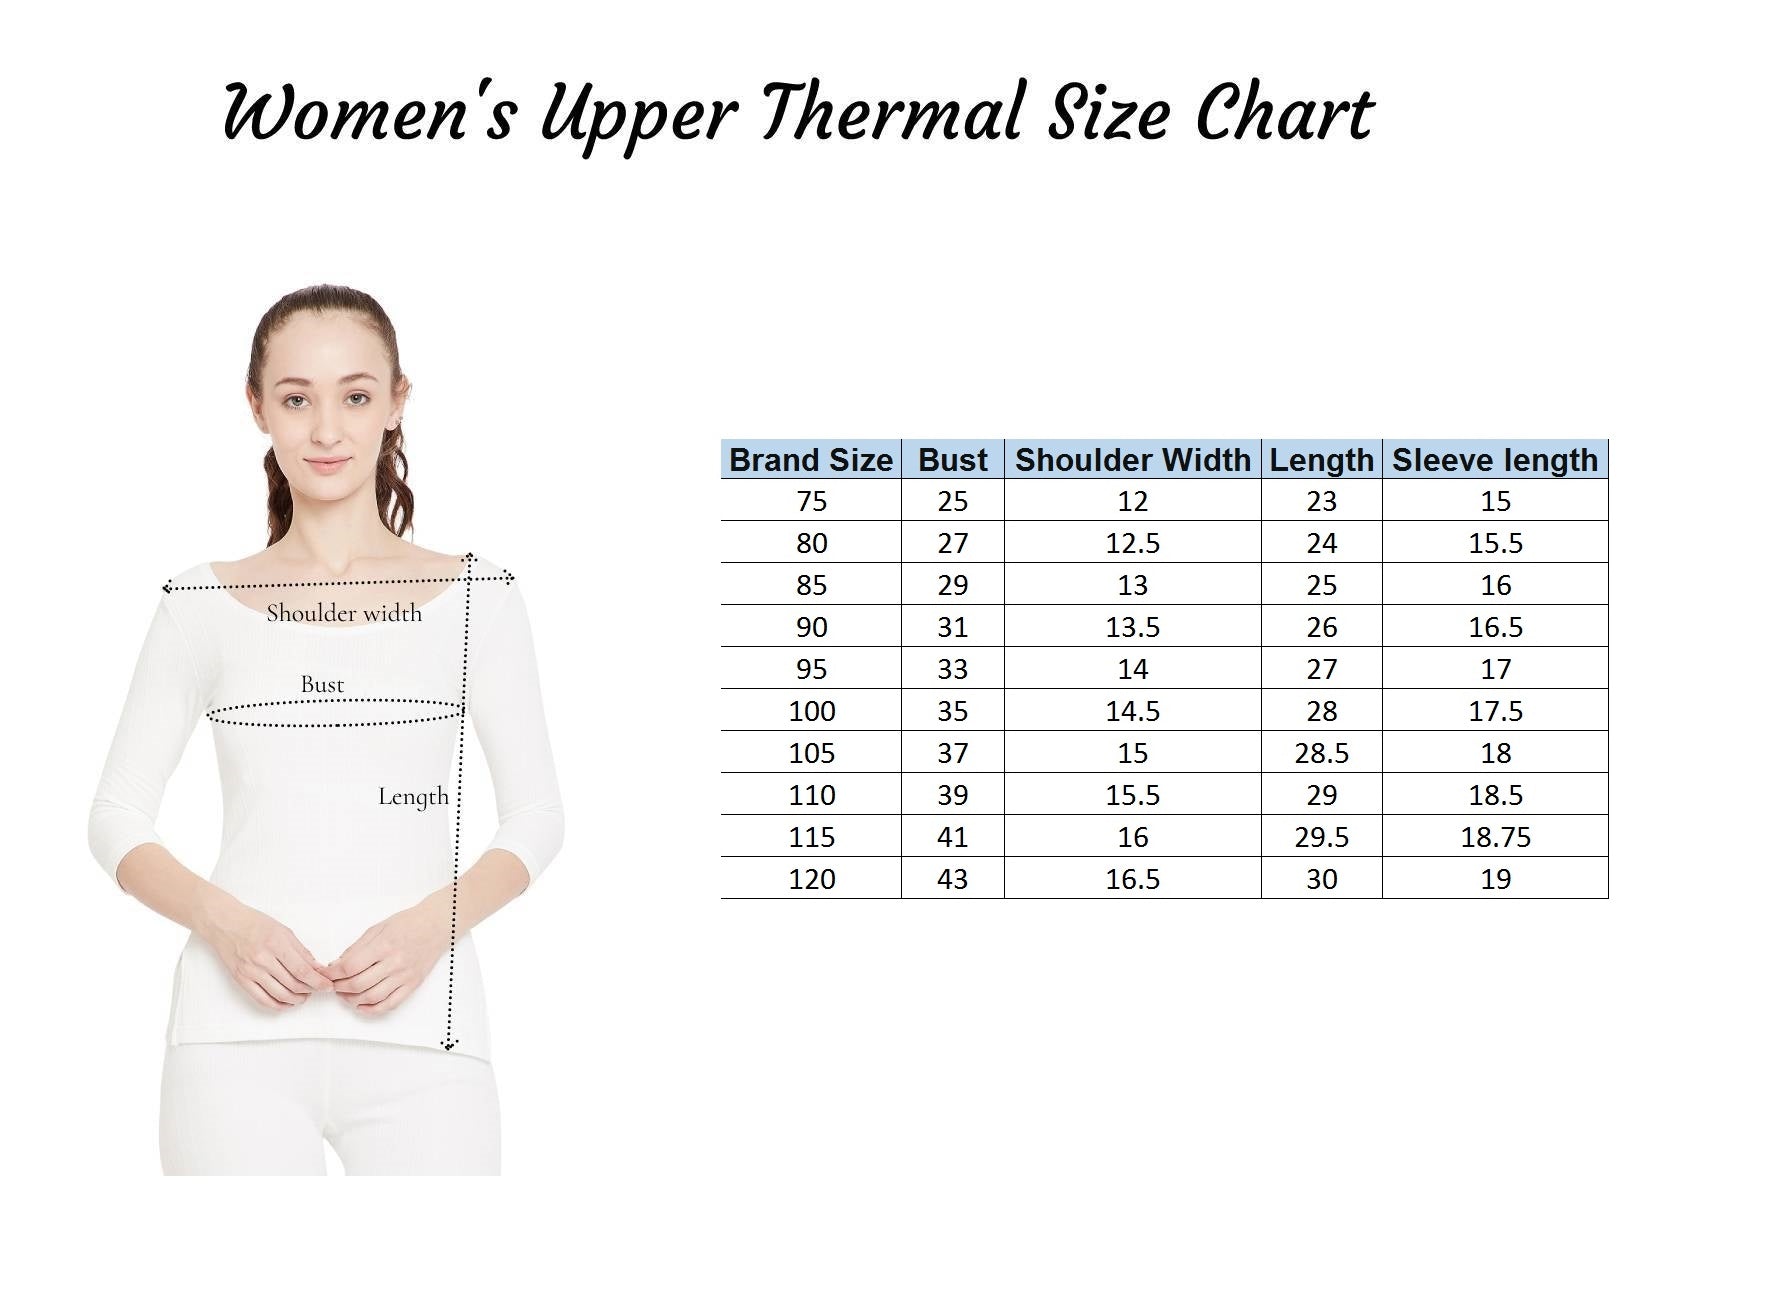 Neva Sleeveless Slip Thermal Upper for Women – Anthra